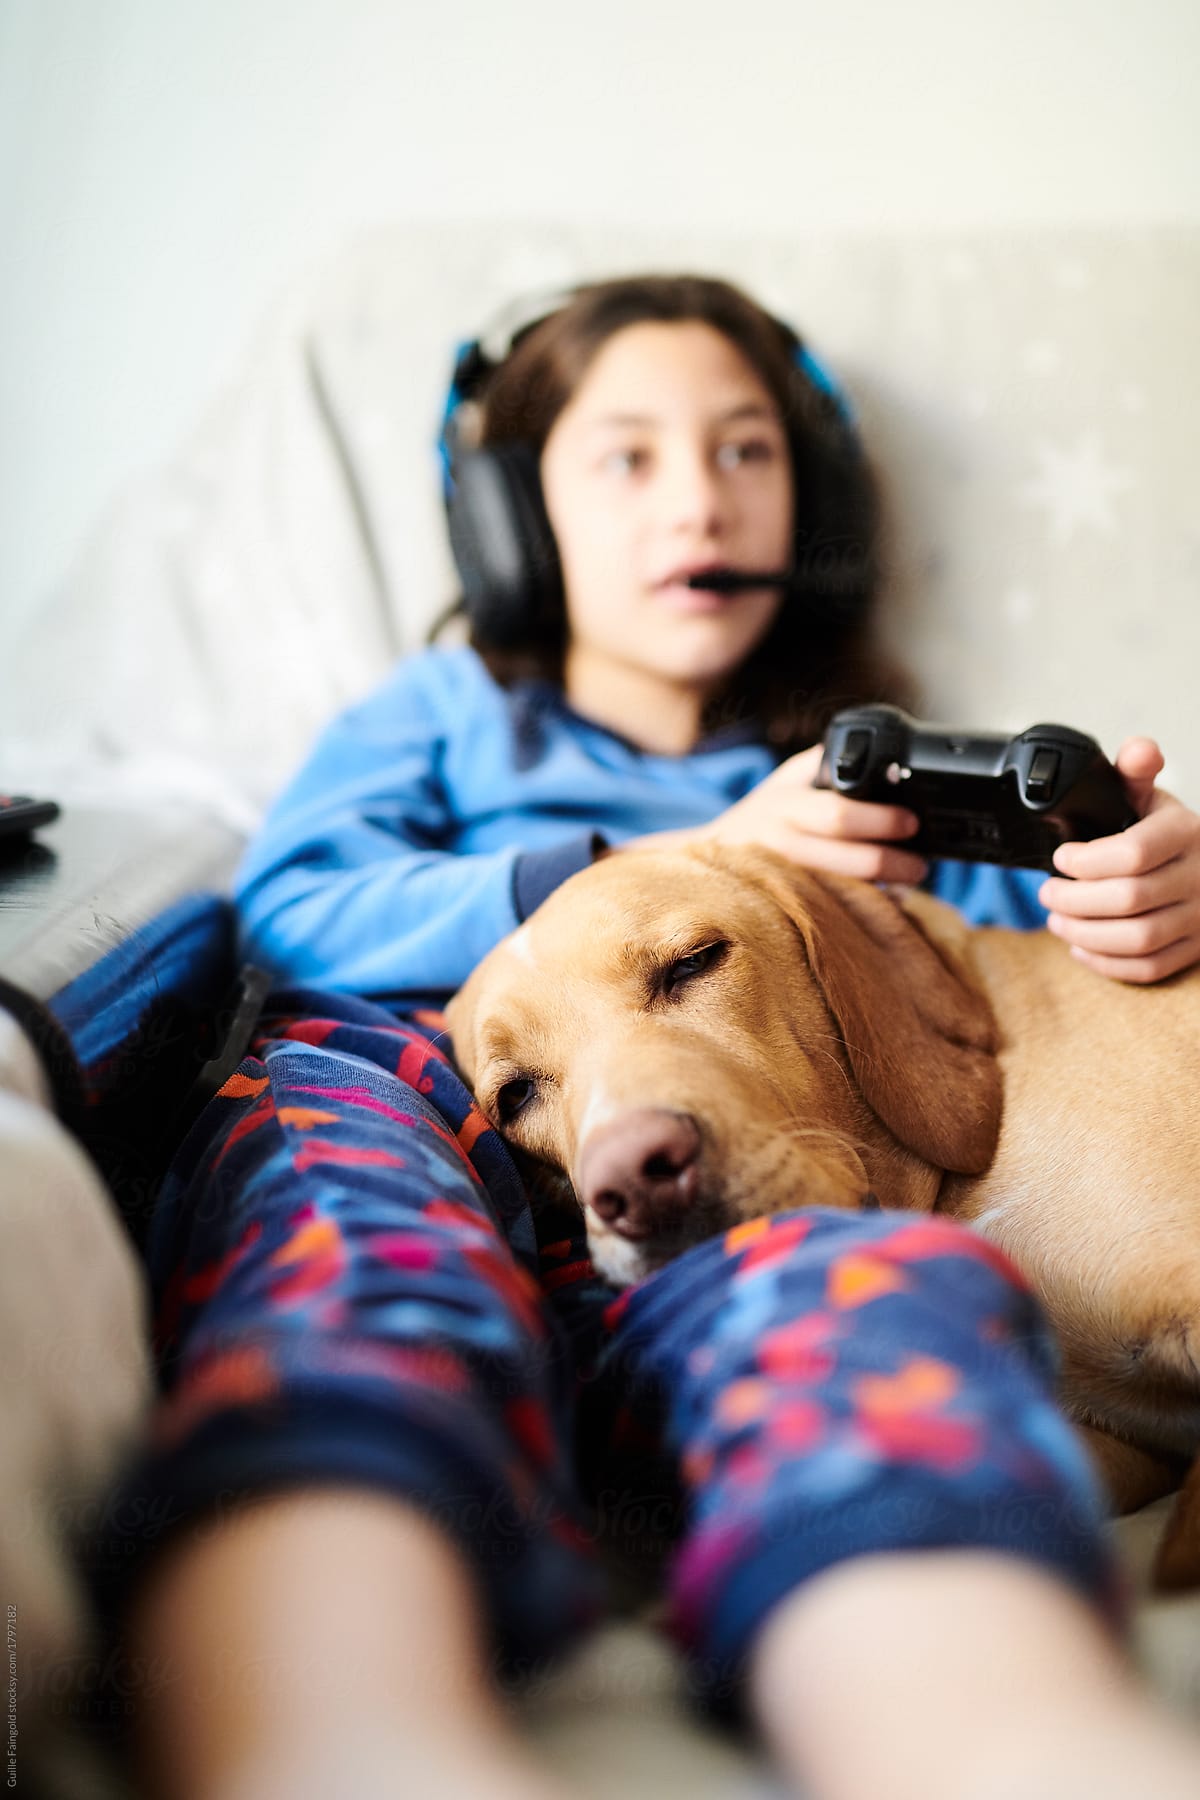 Girl with dog on sofa gaming